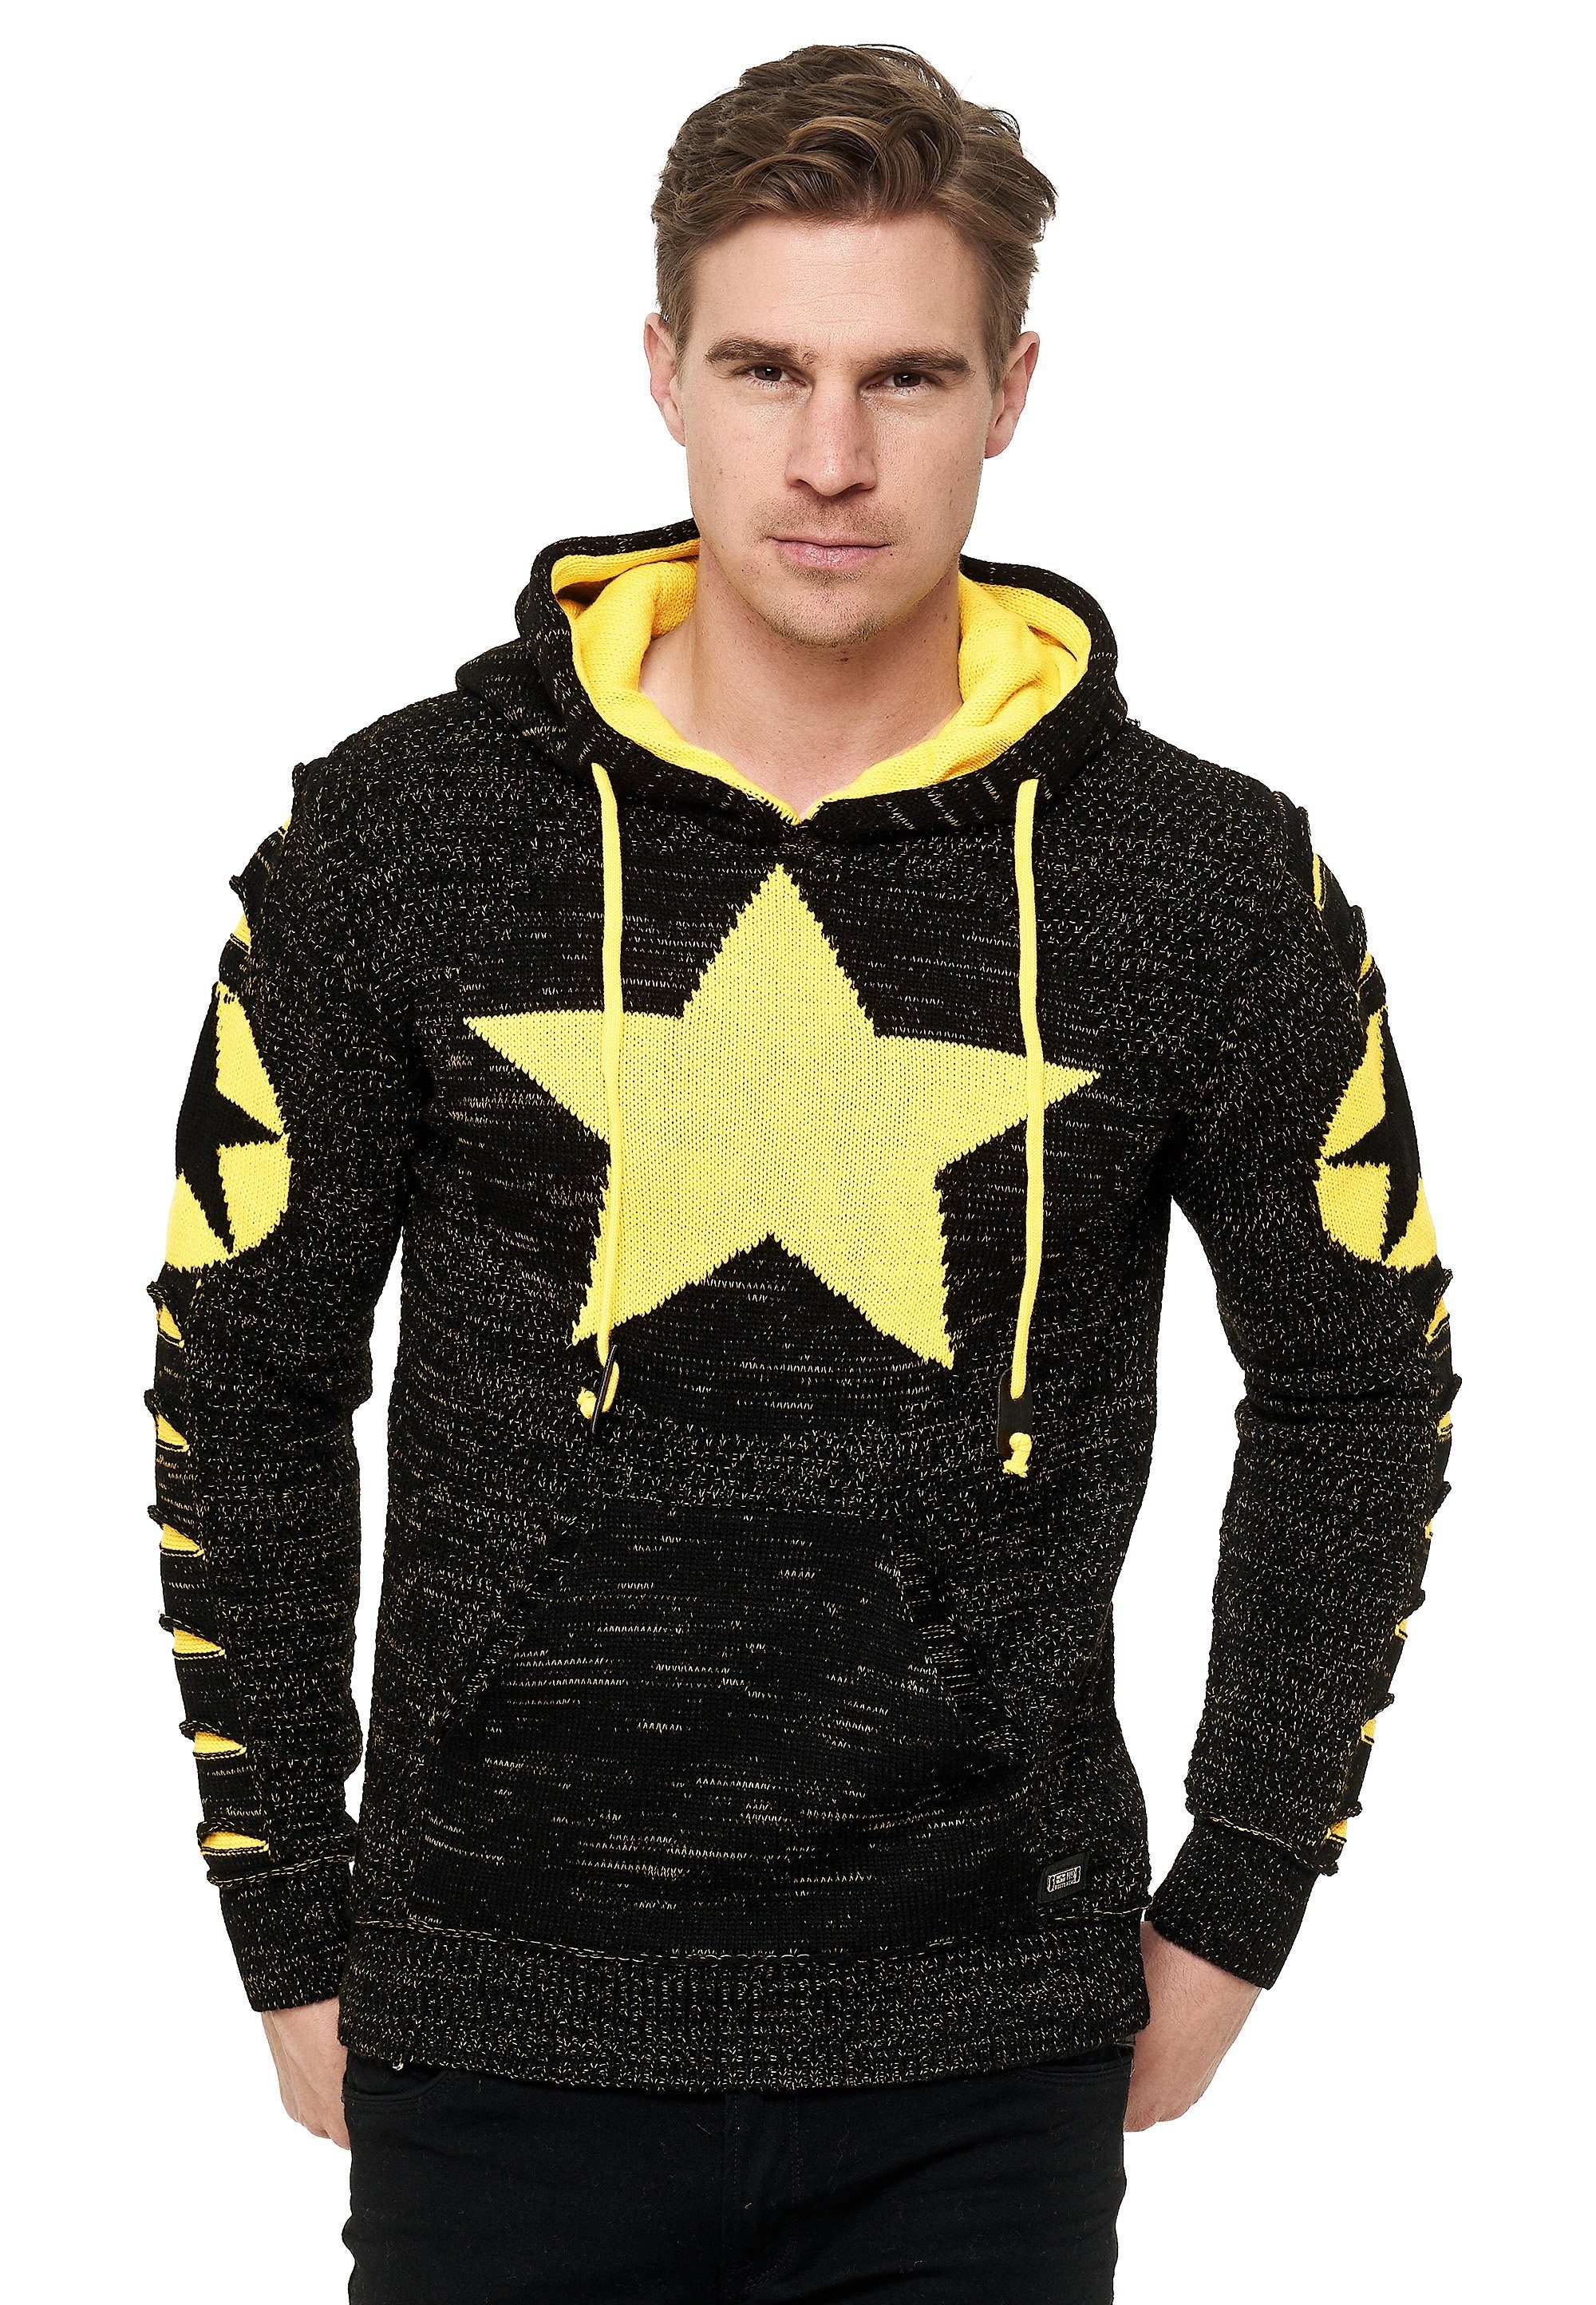 Rusty Neal Kapuzensweatshirt mit großem Stern-Design schwarz-gelb